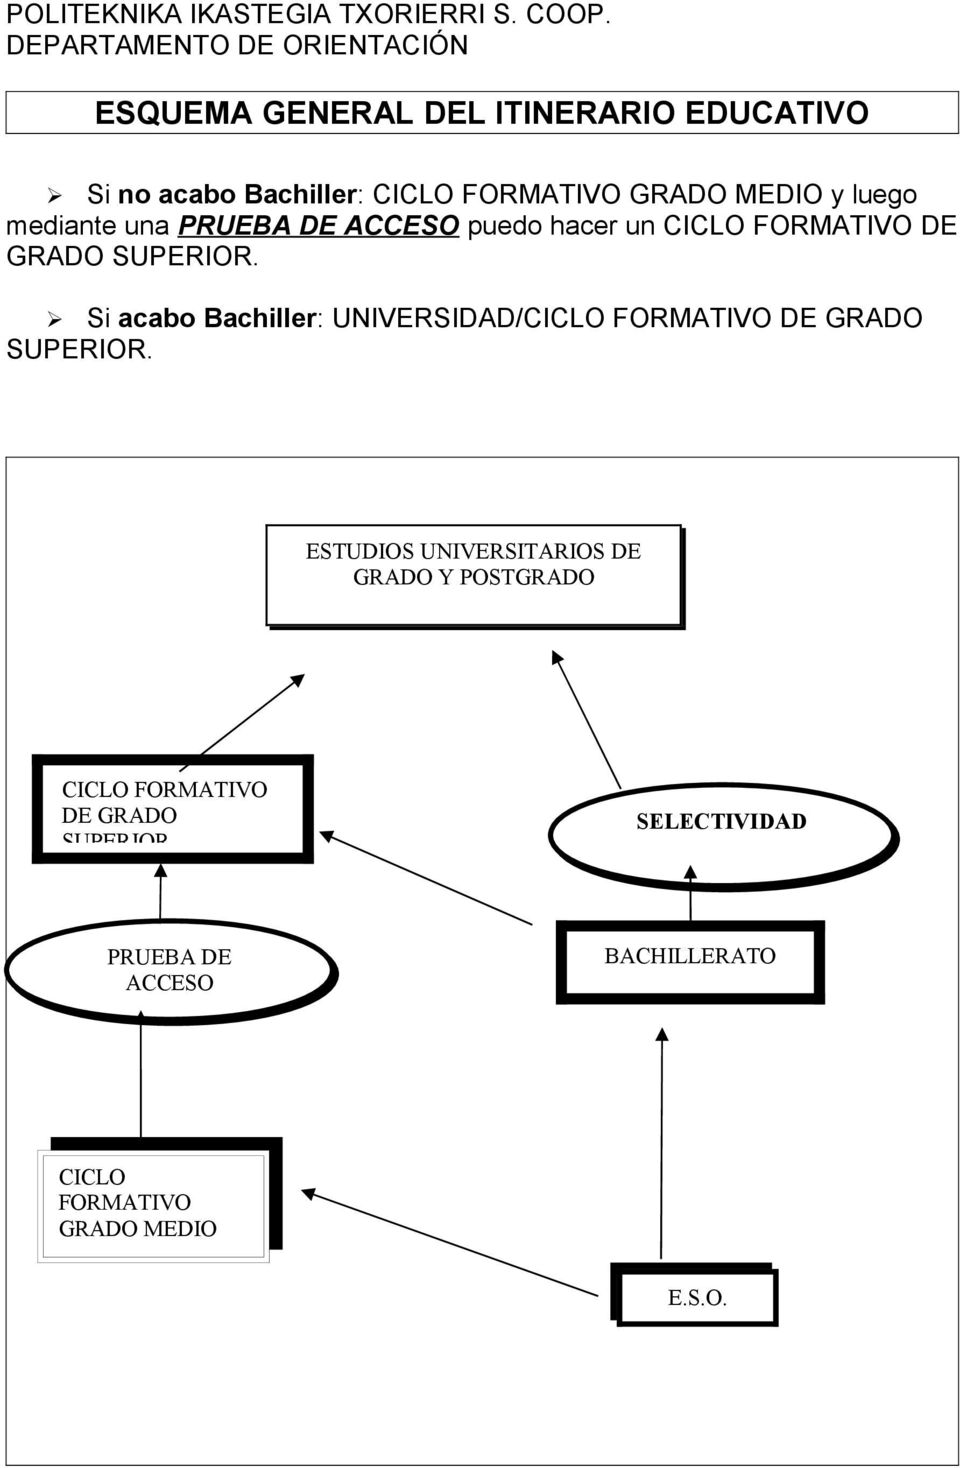 Si acabo Bachiller: UNIVERSIDAD/CICLO FORMATIVO DE GRADO SUPERIOR.